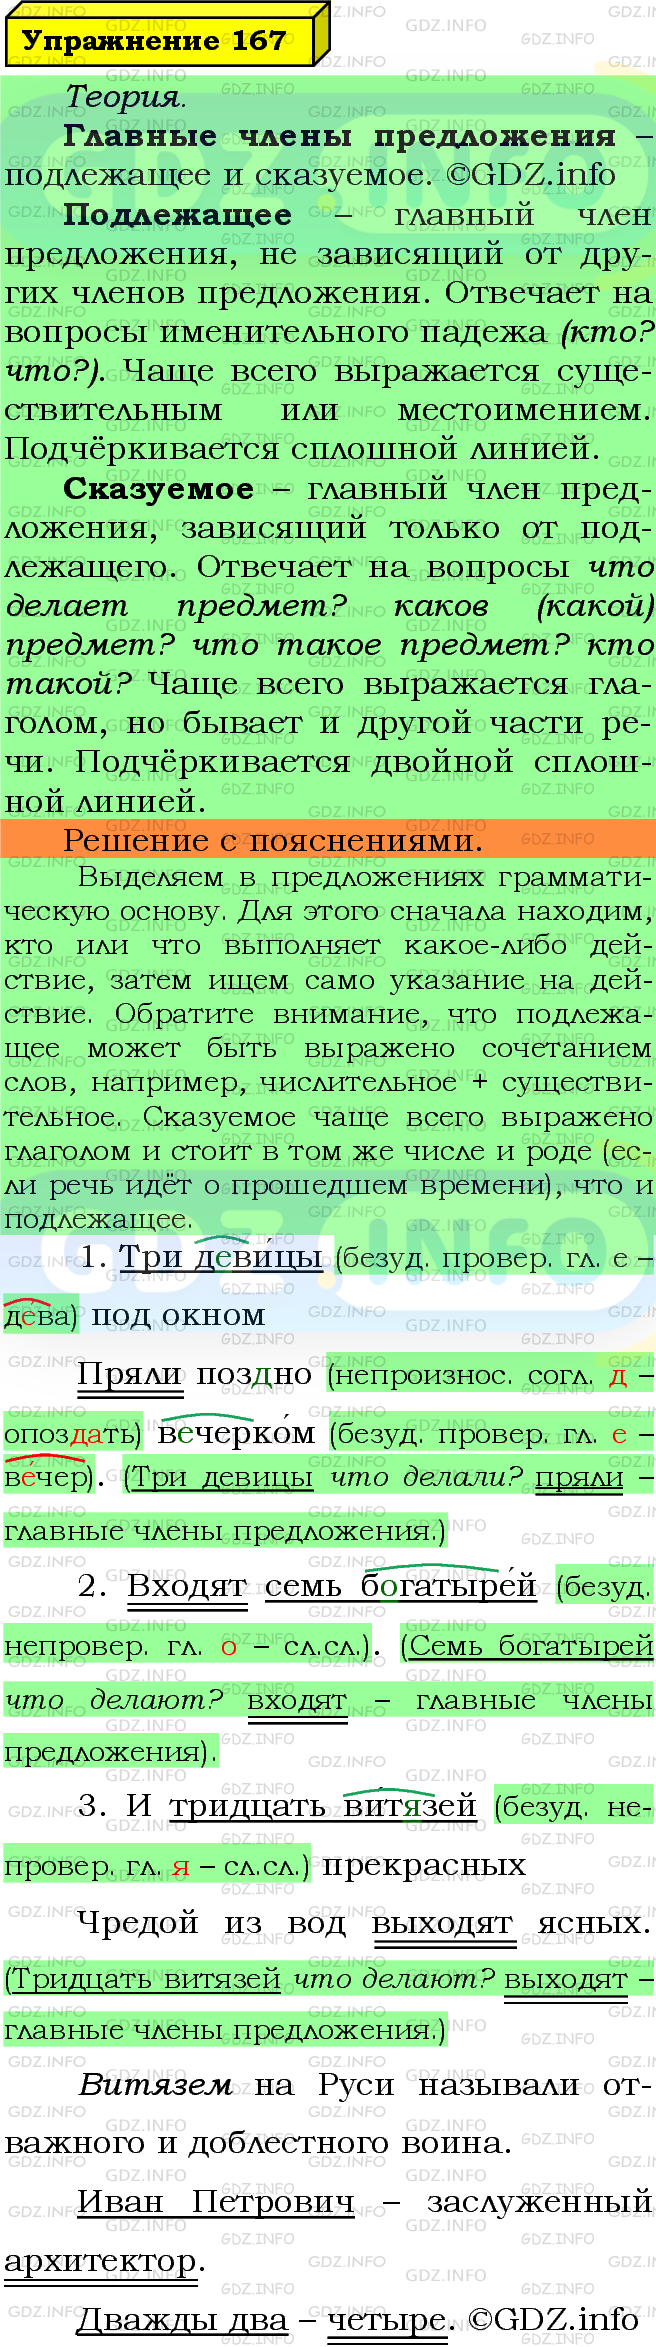 Фото решения 6: Номер №167 из ГДЗ по Русскому языку 5 класс: Ладыженская Т.А. 2019г.